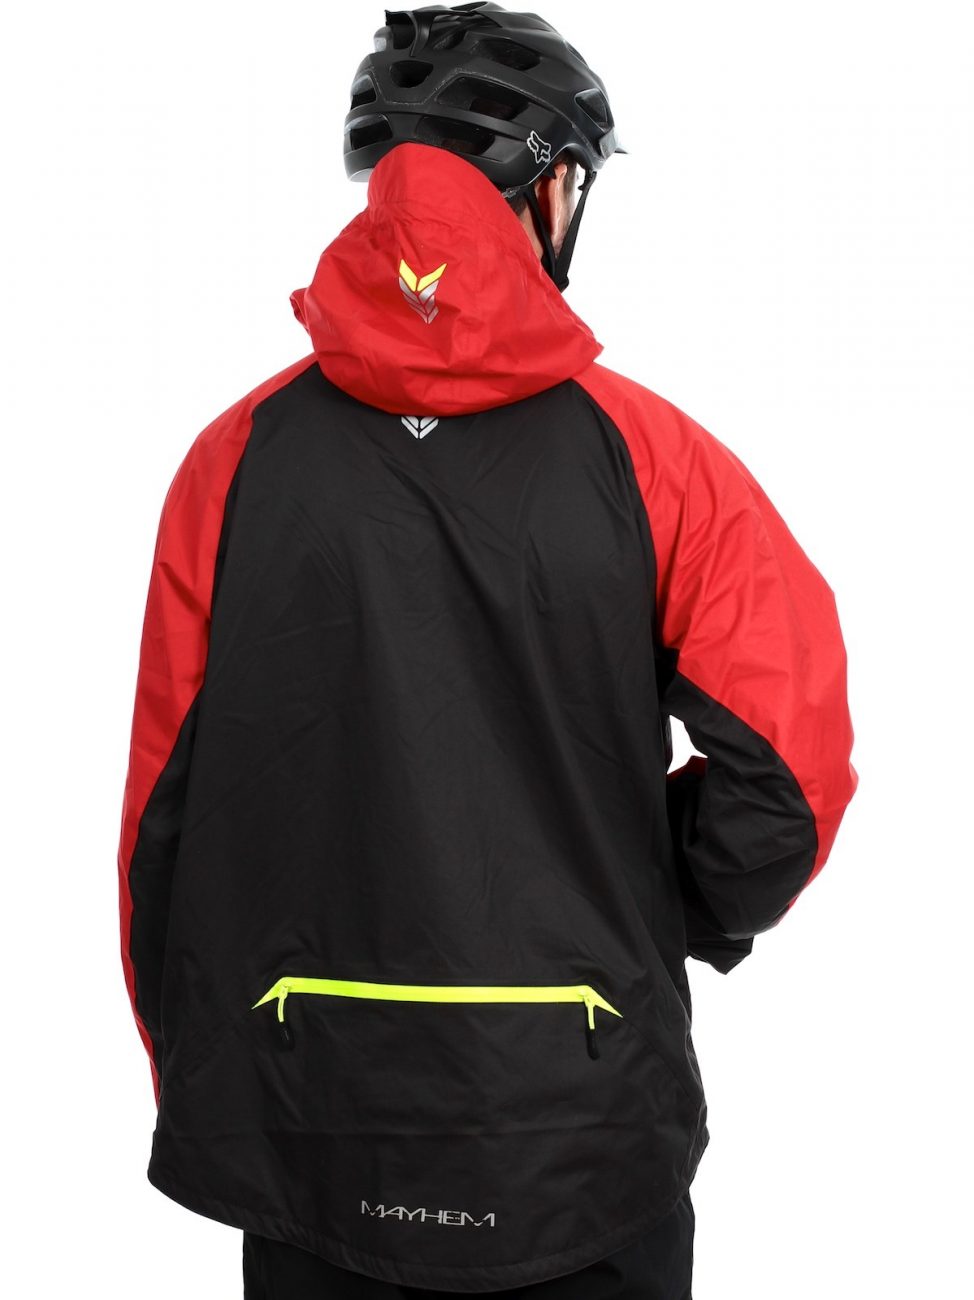 altura-red-black-mayhem-mtb-jacket-0-b6017-xl